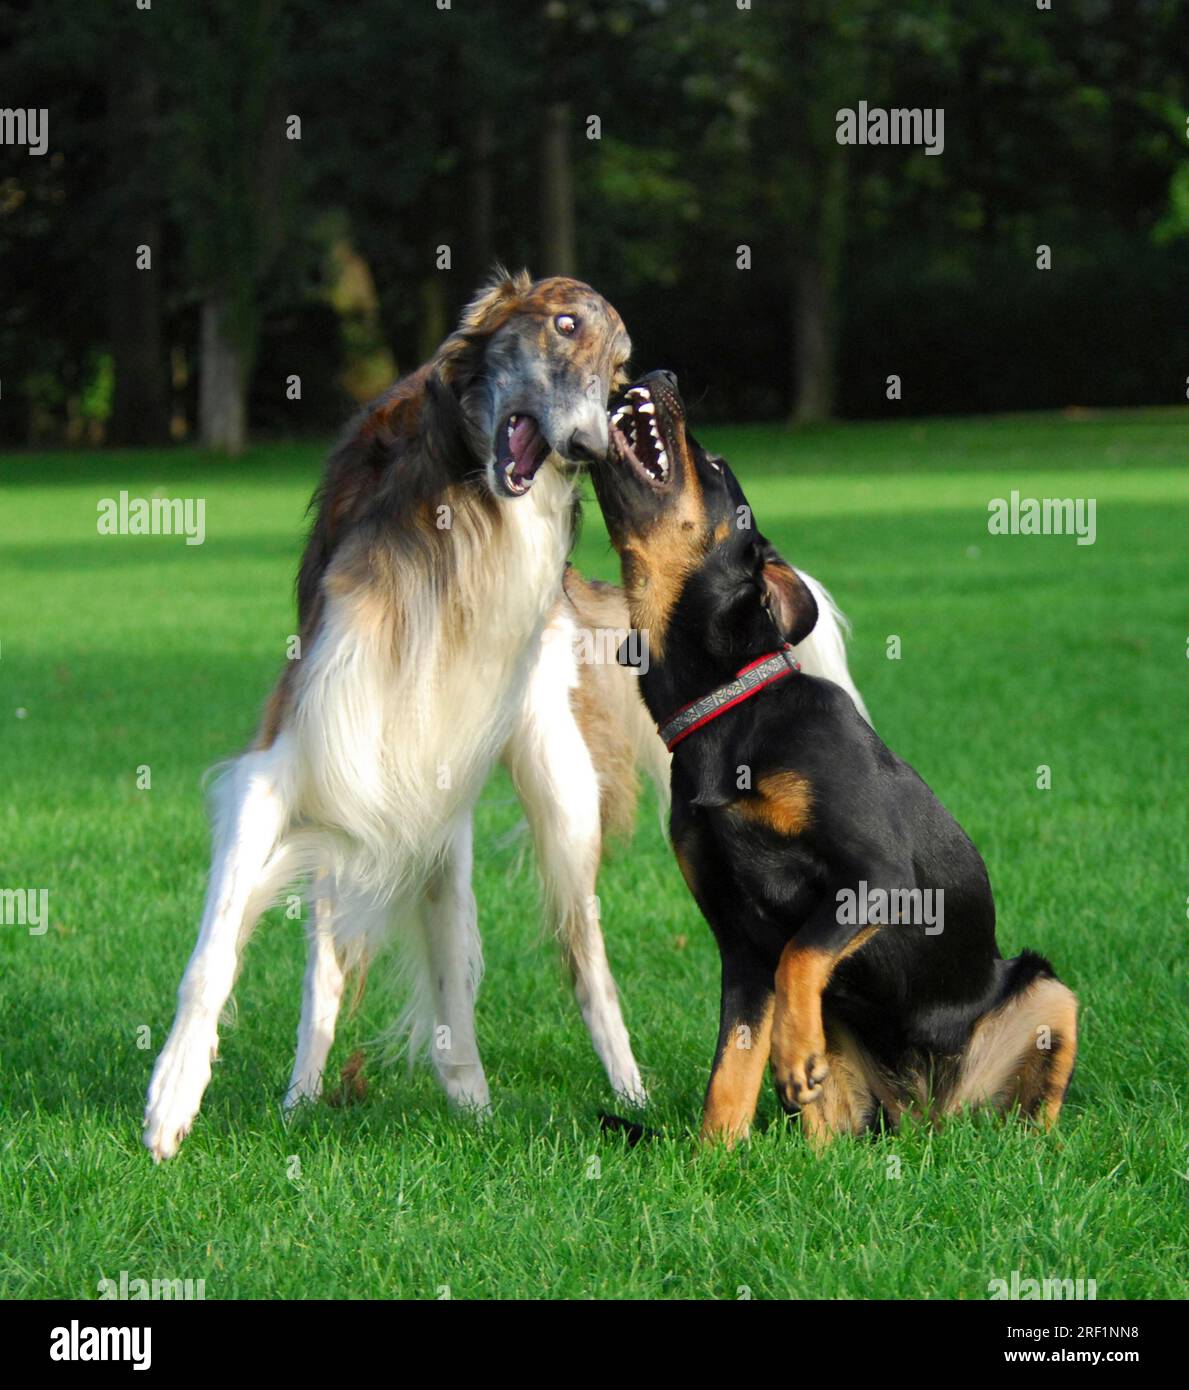 Borzoi, lévrier russe, et chien de race mixte (canis lupus familiaris), jouant ensemble dans un pré, norme FCI n ° 193, Russkaya Psovaya Banque D'Images